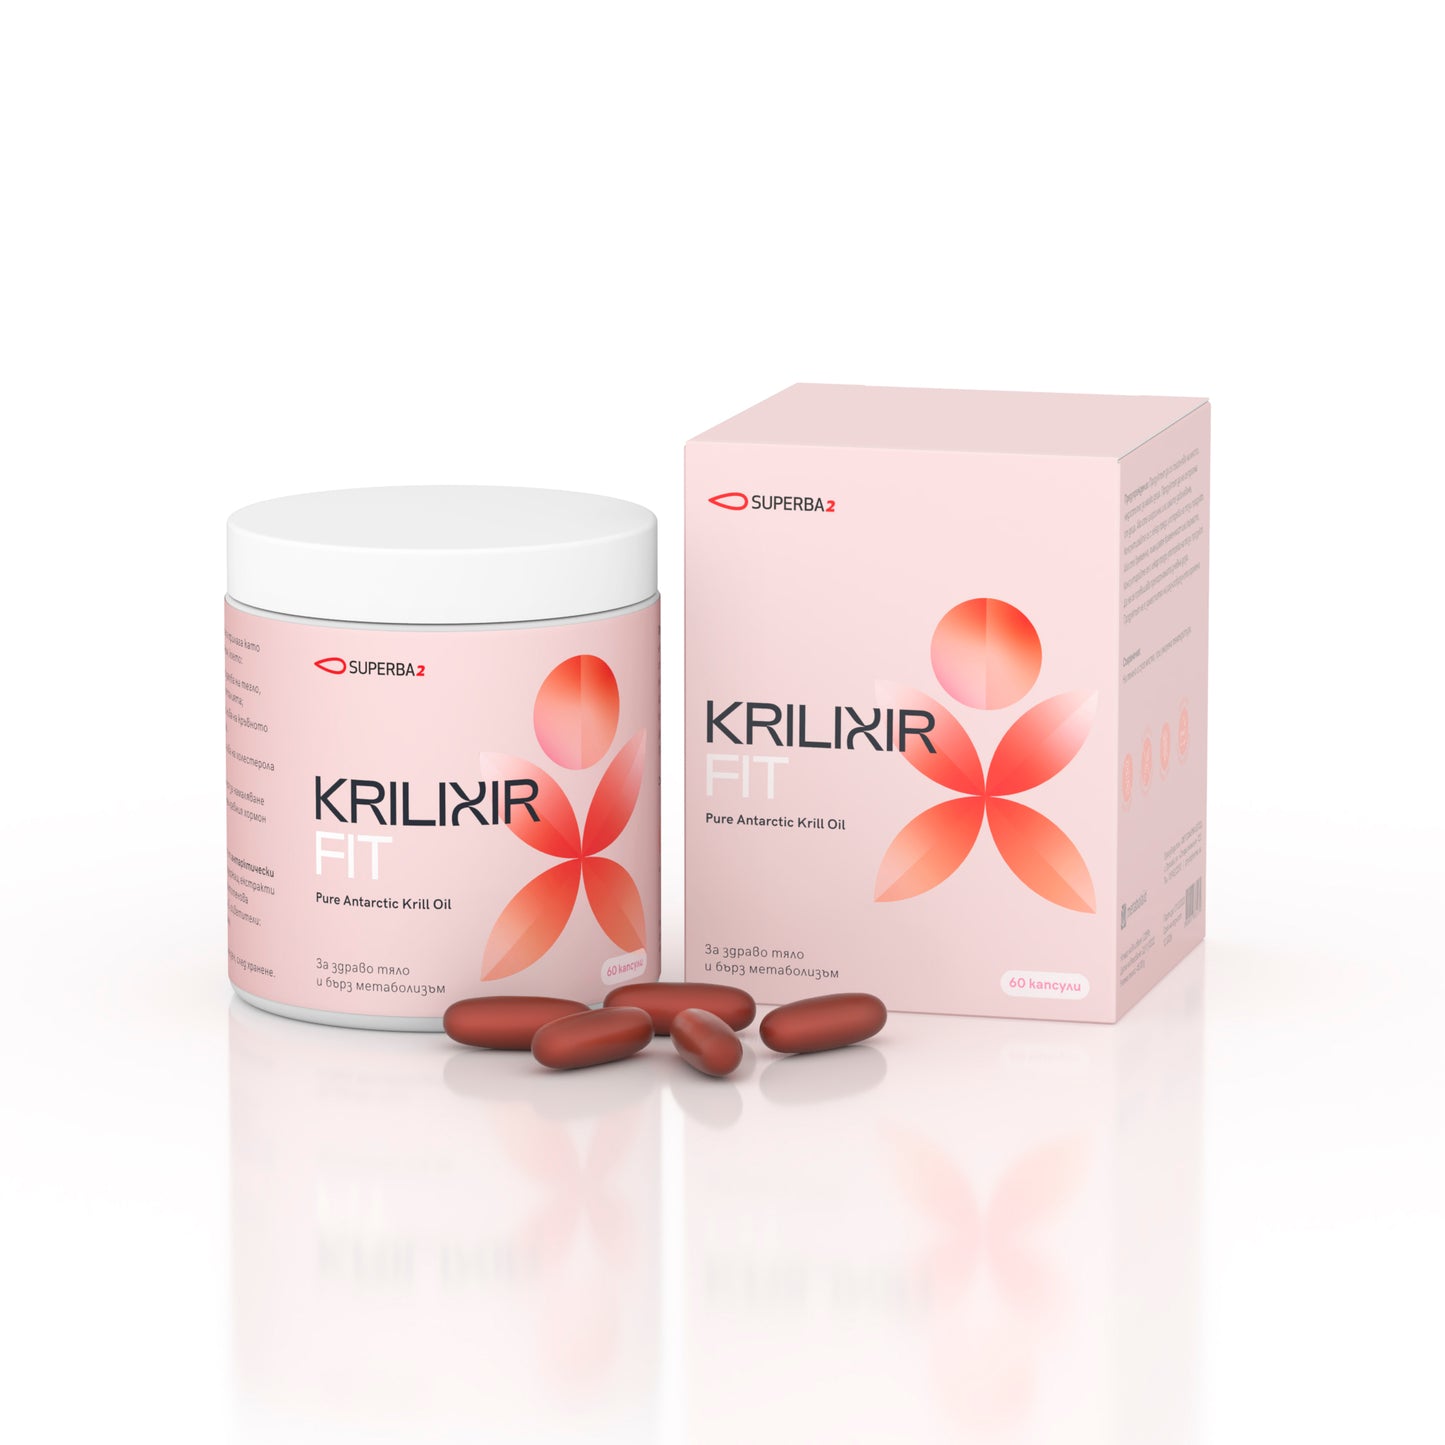 Krilixir Fit - За здраво тяло и бърз метаболизъм